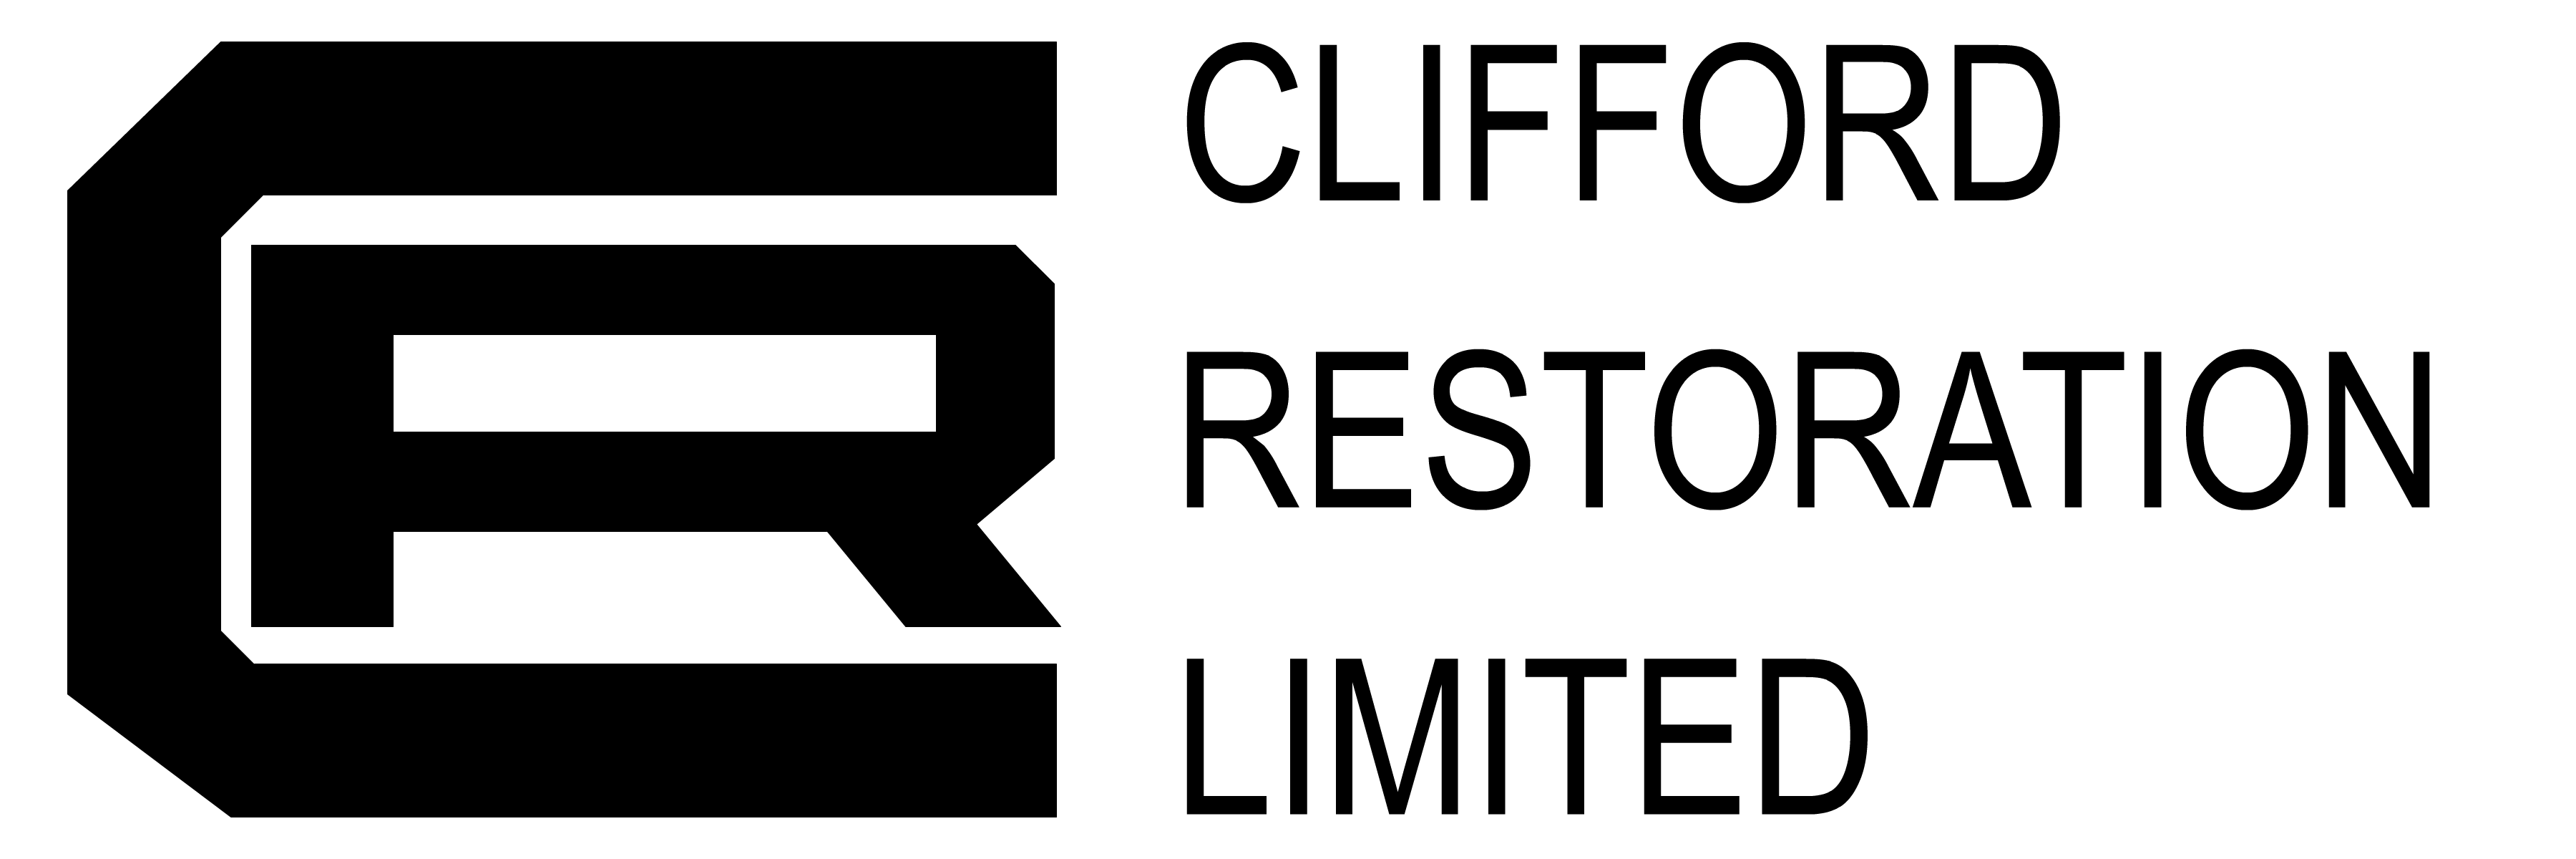 Clifford Logo - clifford-logo |